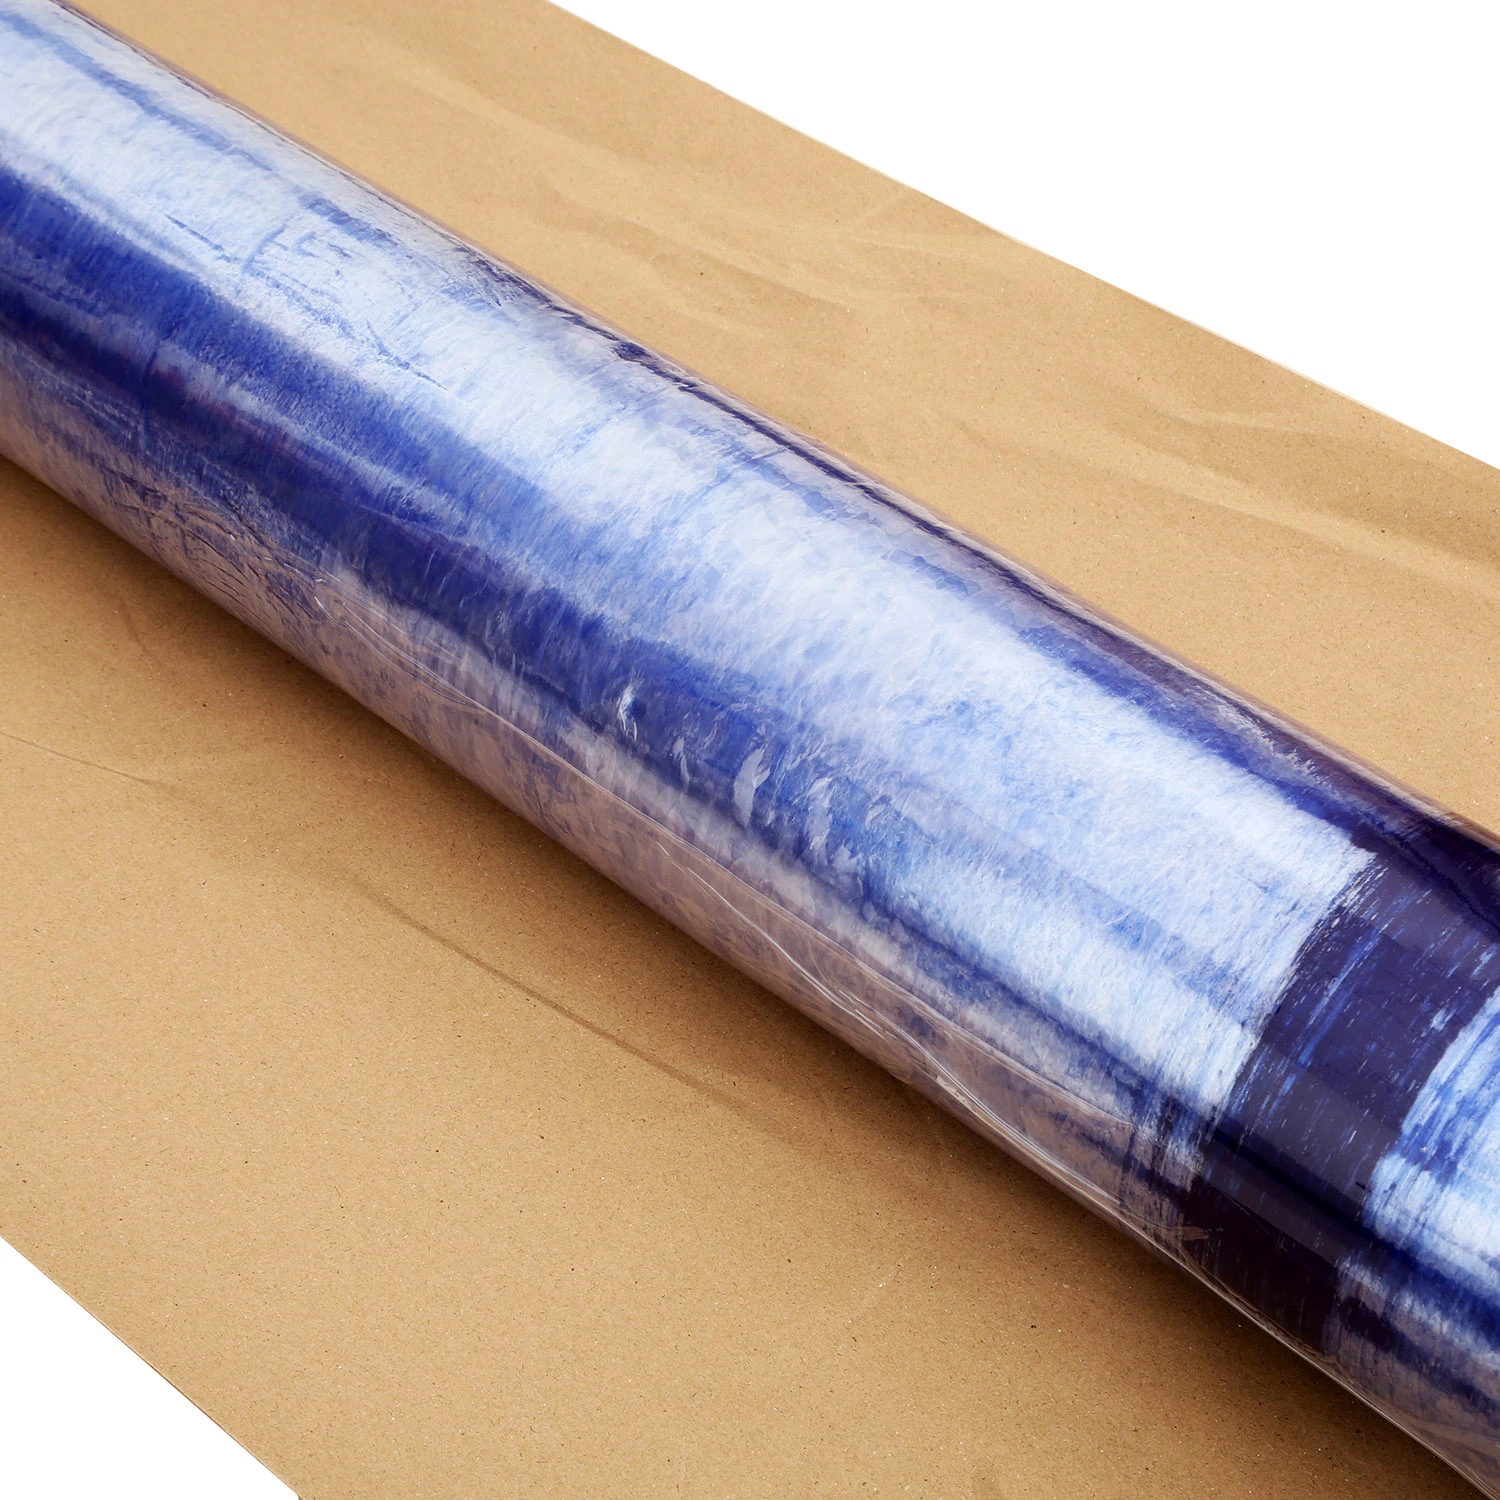 Feuille d'emballage extensible en PVC bleu pour emballer matelas, canapé et chaise.